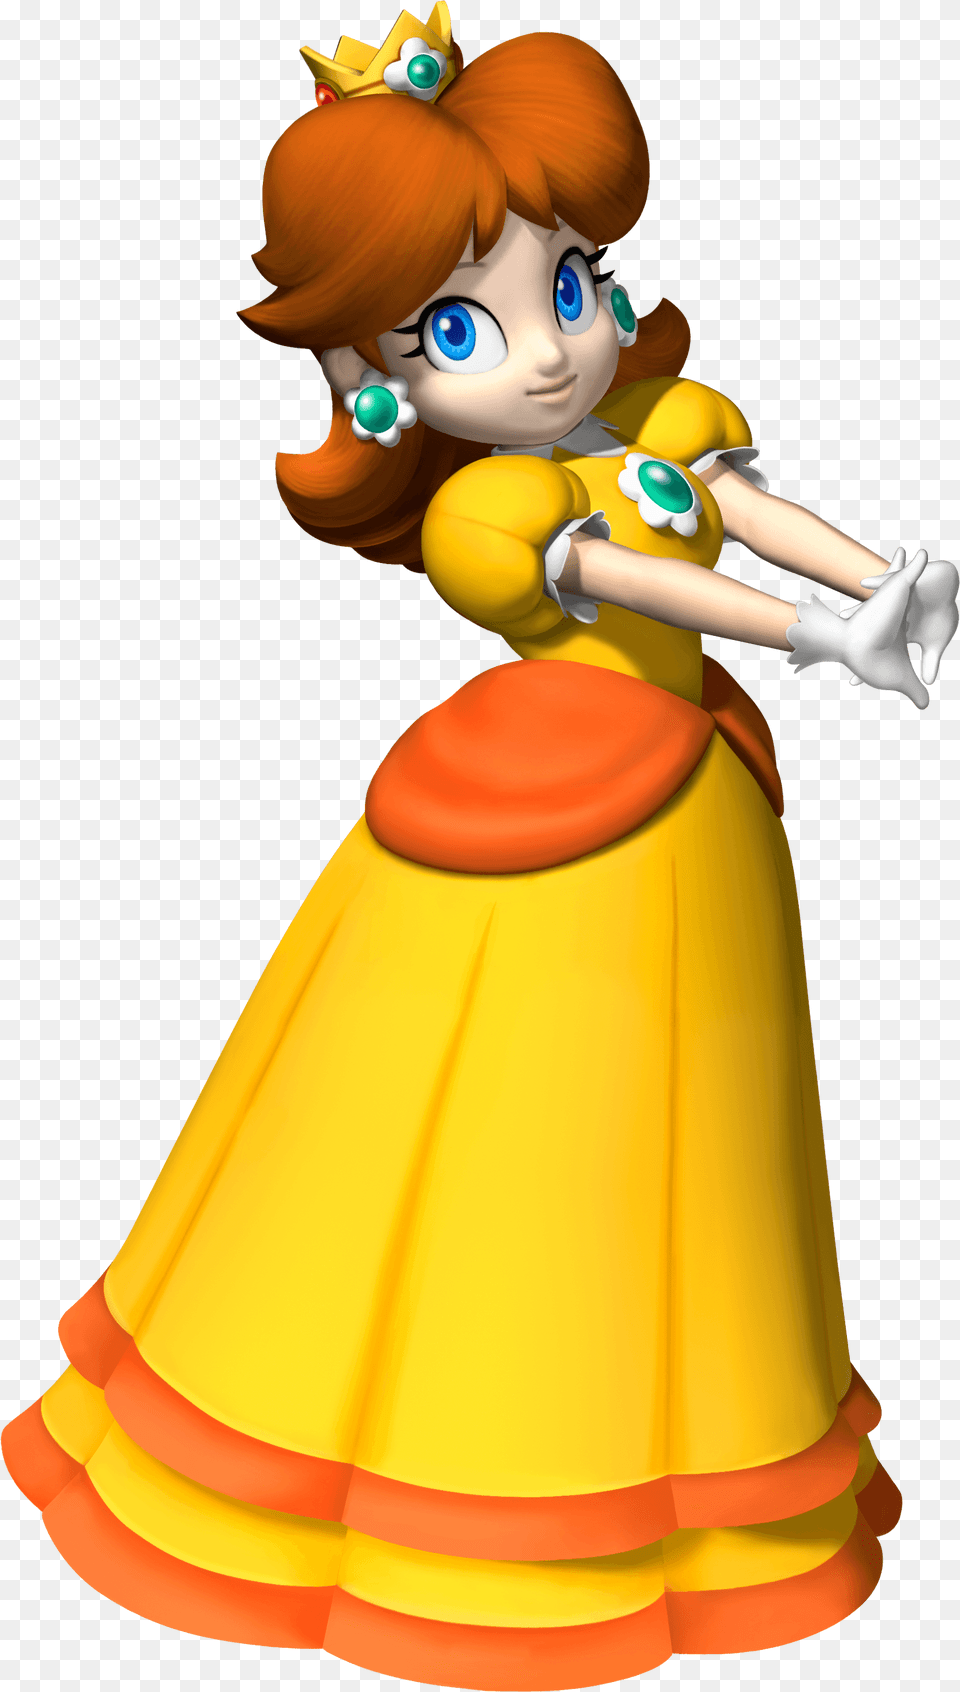 Princess Peach Clipart Mario Party Super Mario Princess Daisy, Baby, Person, Cartoon, Face Png